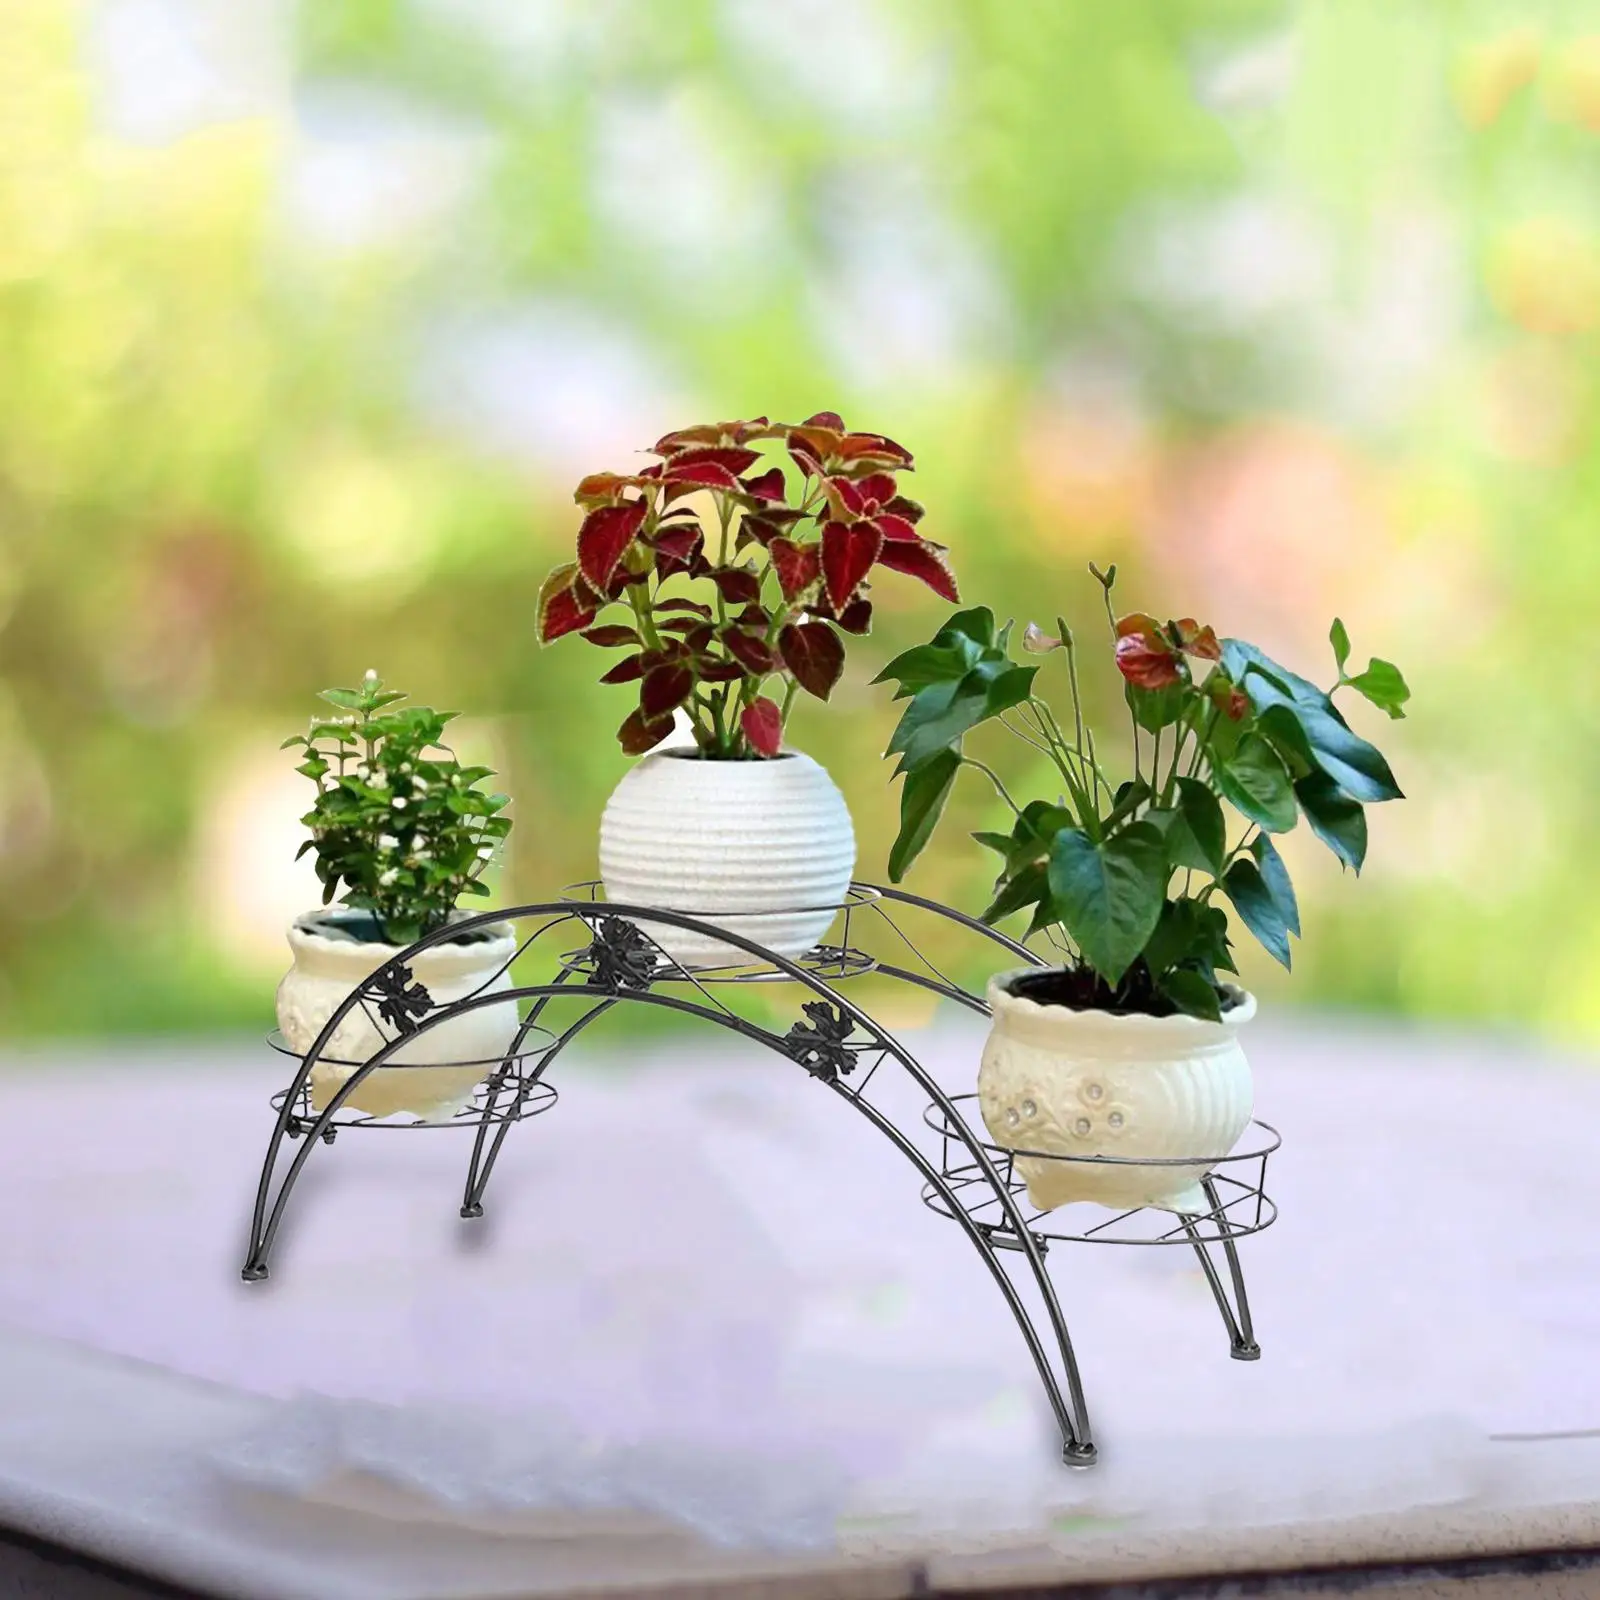 with 3 Pot Trays Arch Shaped Flower Pot Stand Shelf Garden Container Iron Art Flower Pot Holder for Garden Flower Pot Stand